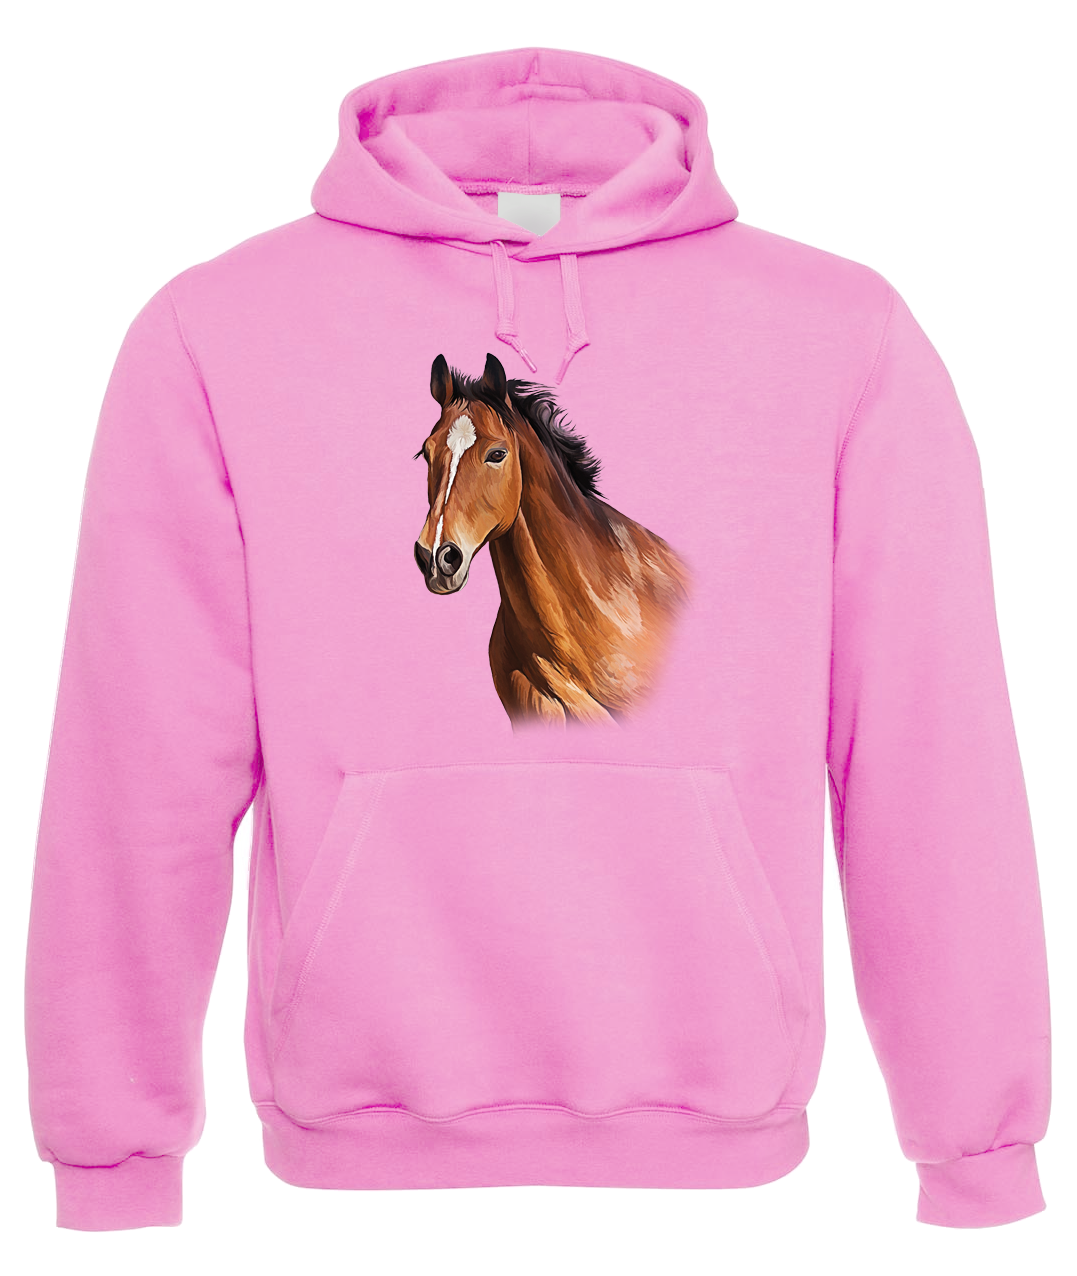 Mikina s koněm - Hnědák Velikost: XL, Barva: Světle růžová